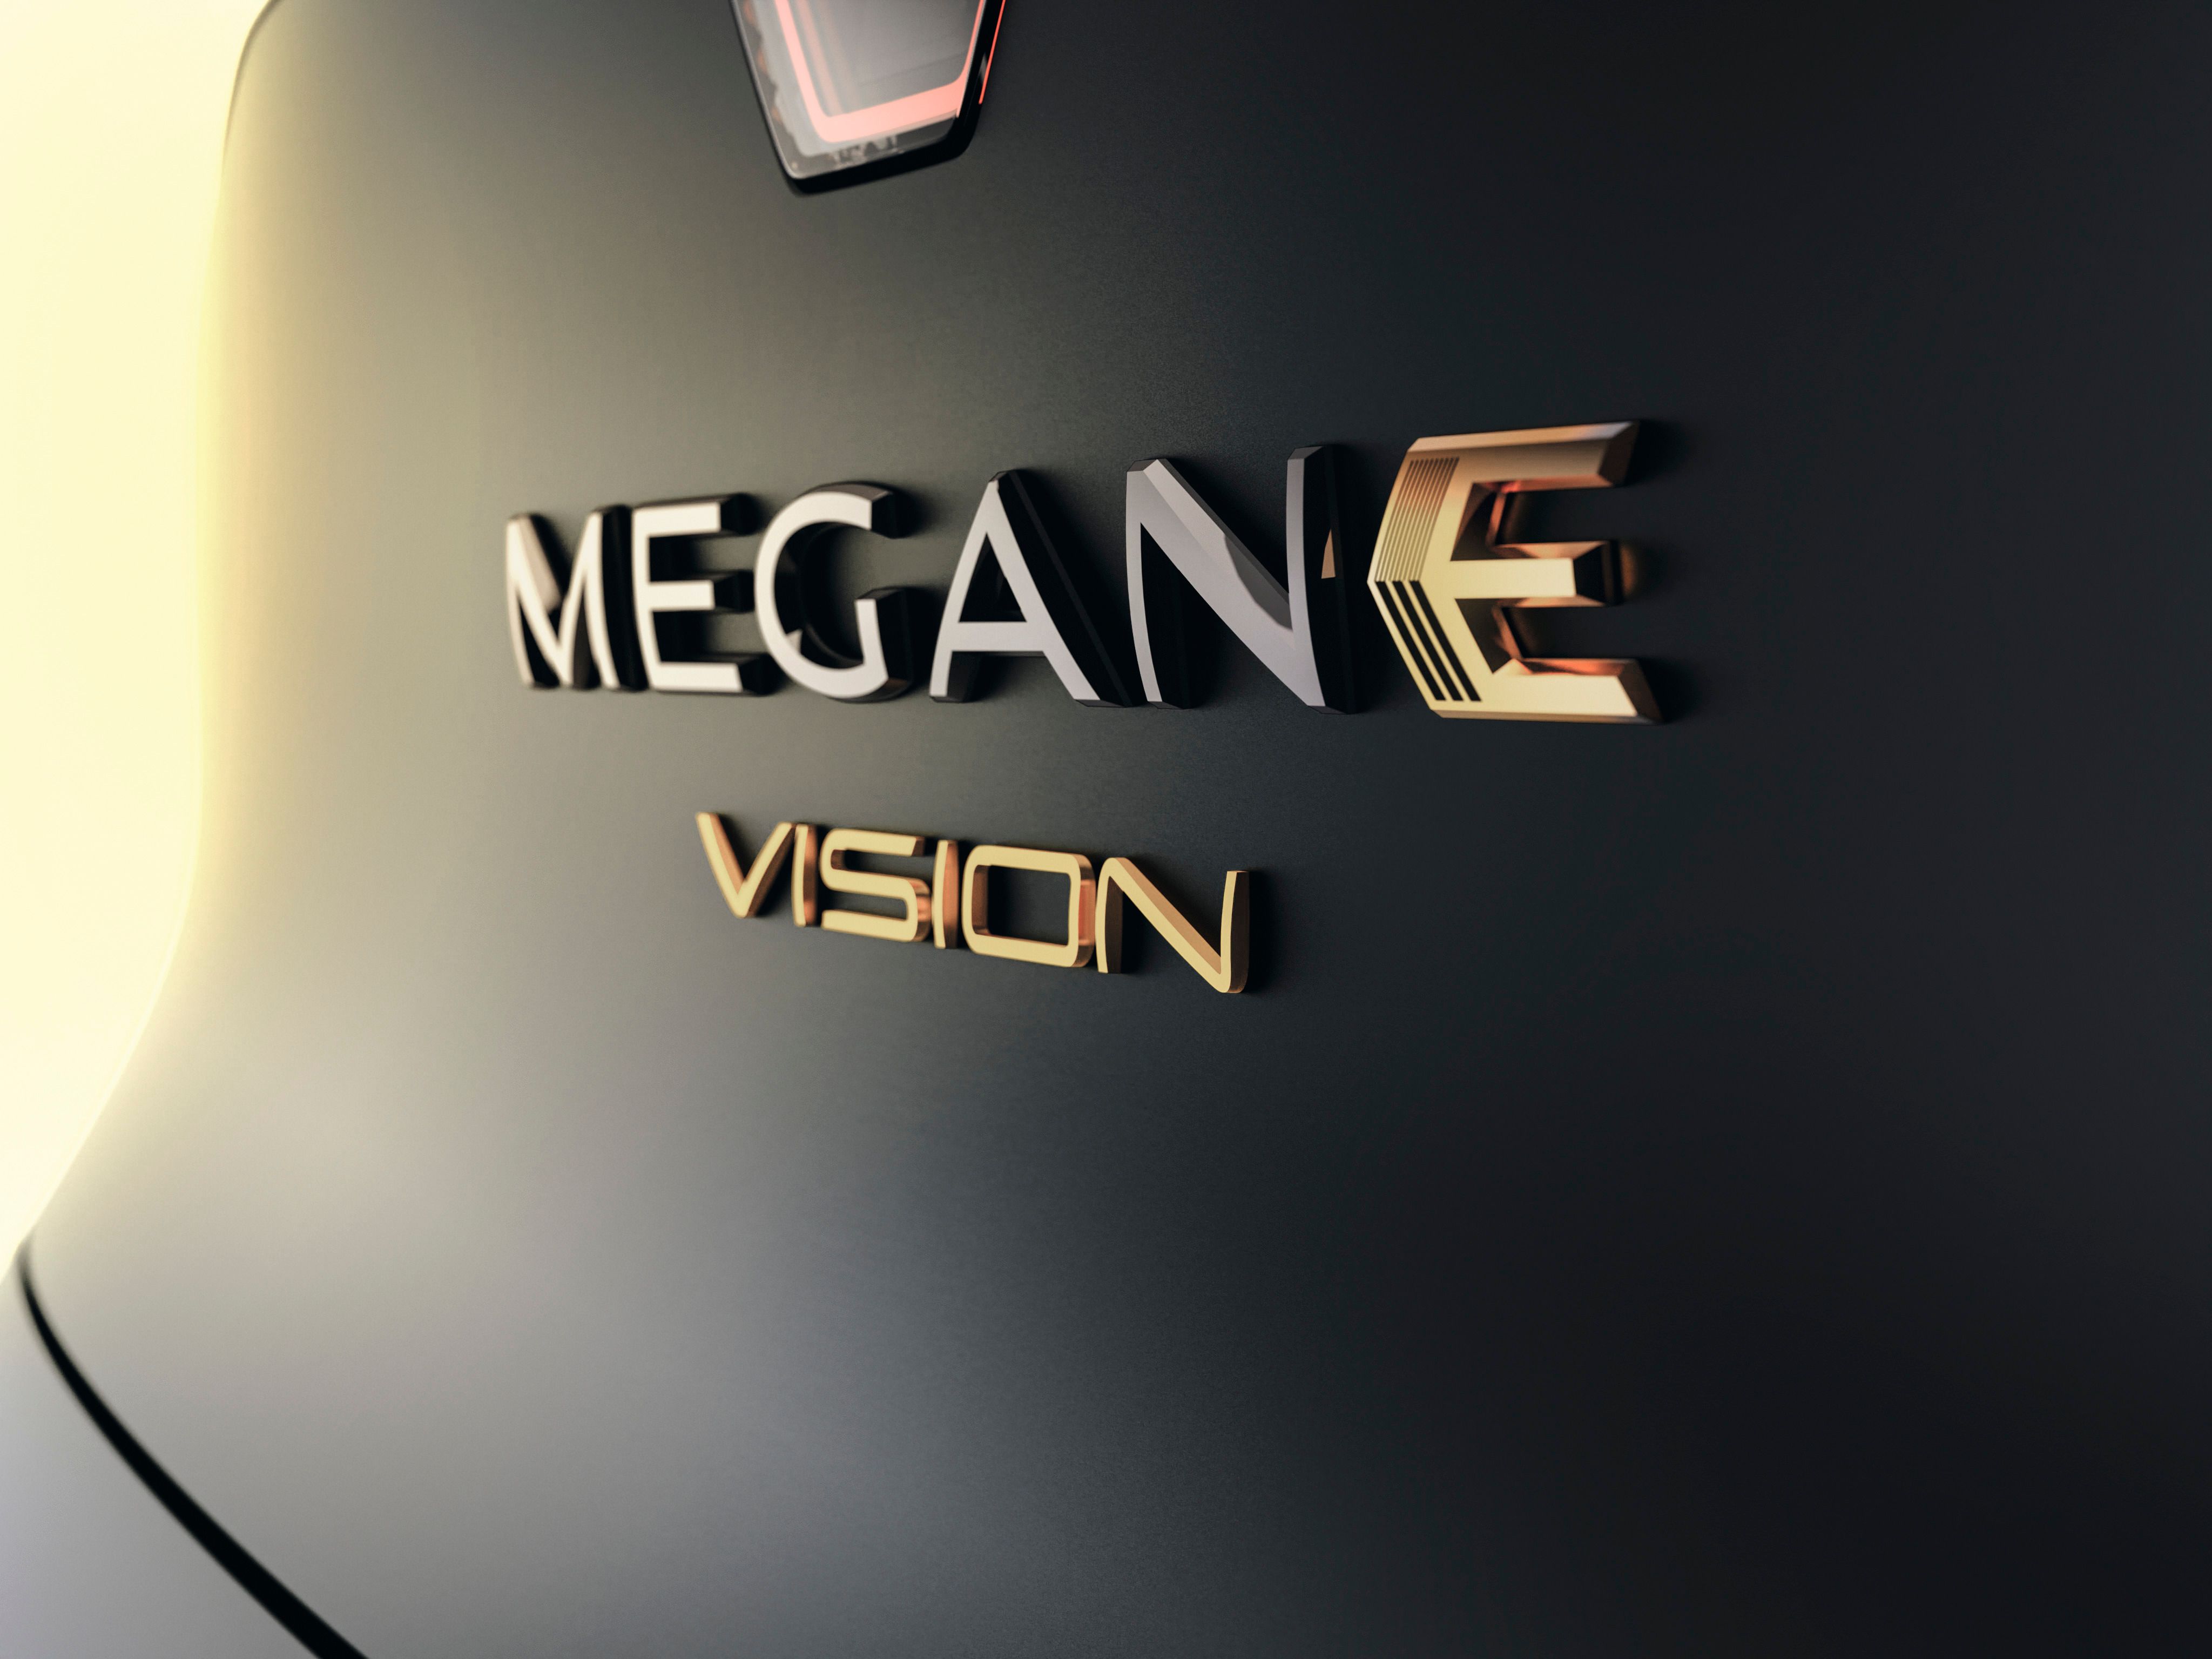 2020 Renault Megane eVision